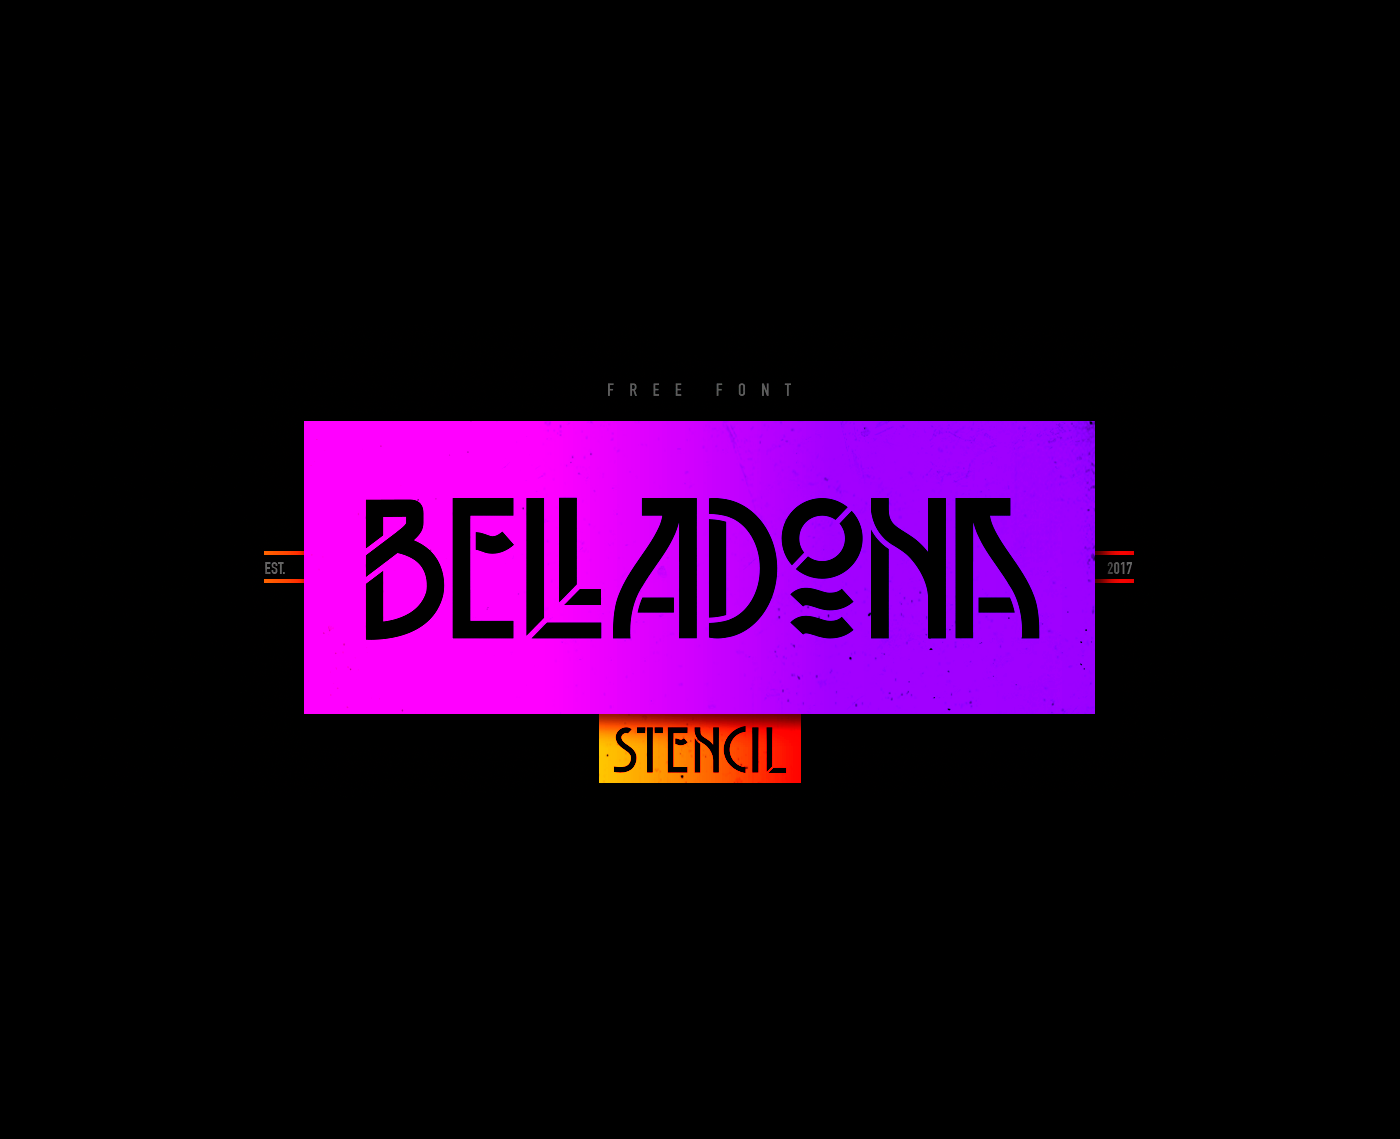 Belladona Stencil